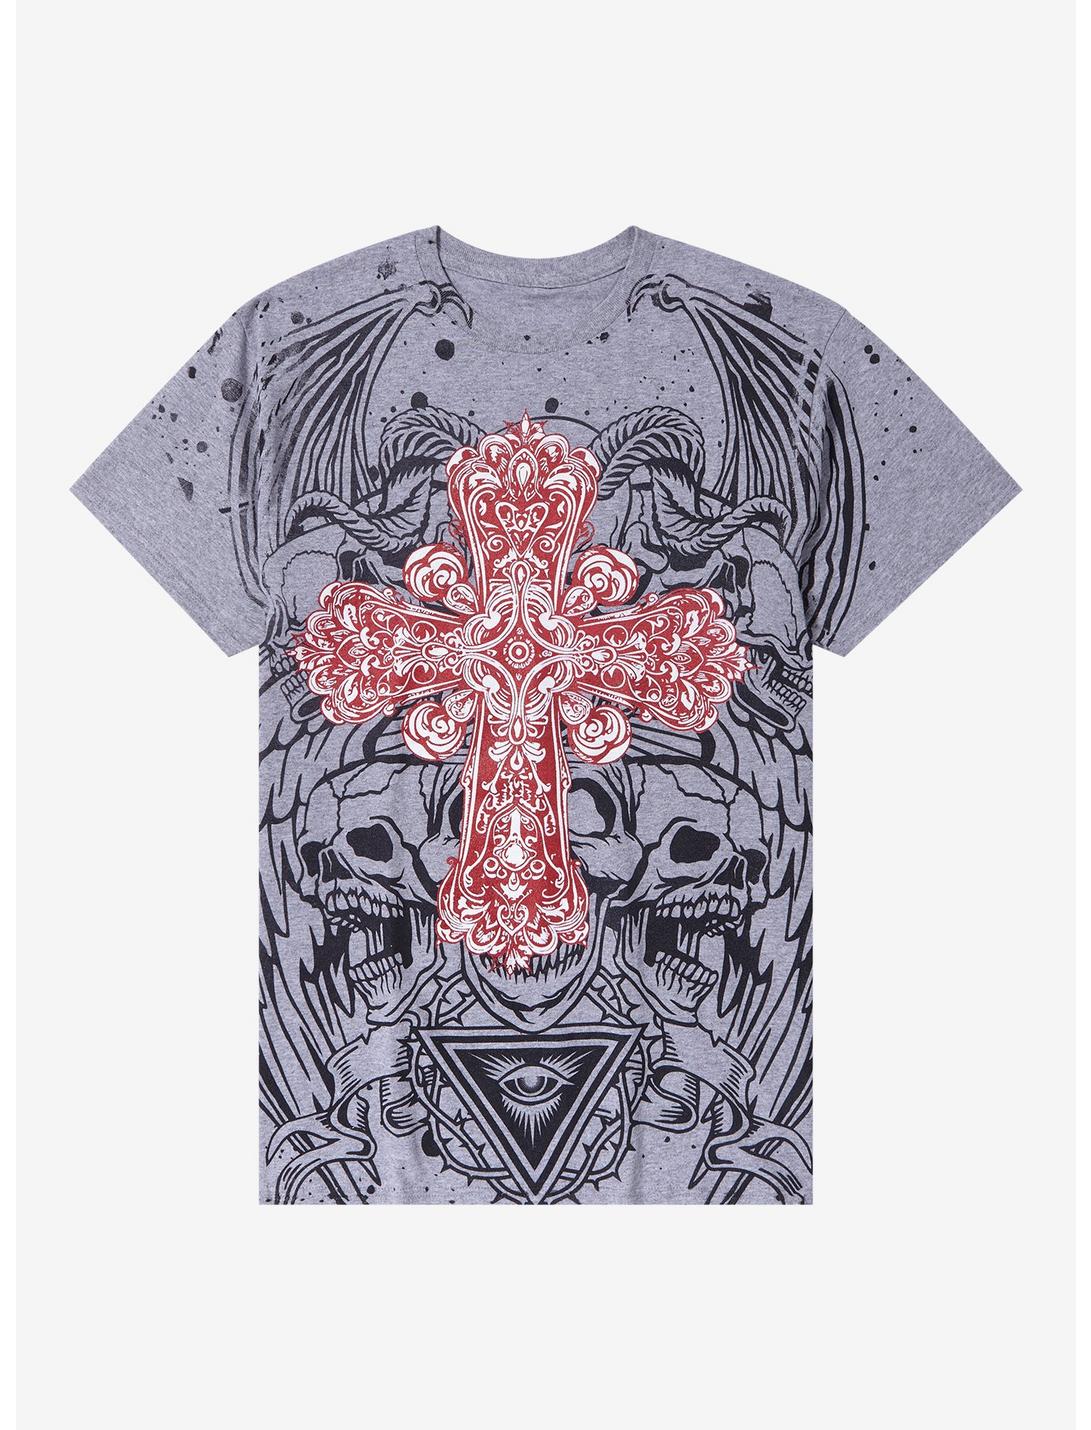 Ornate Cross Skull Demon T-Shirt, MULTI, hi-res